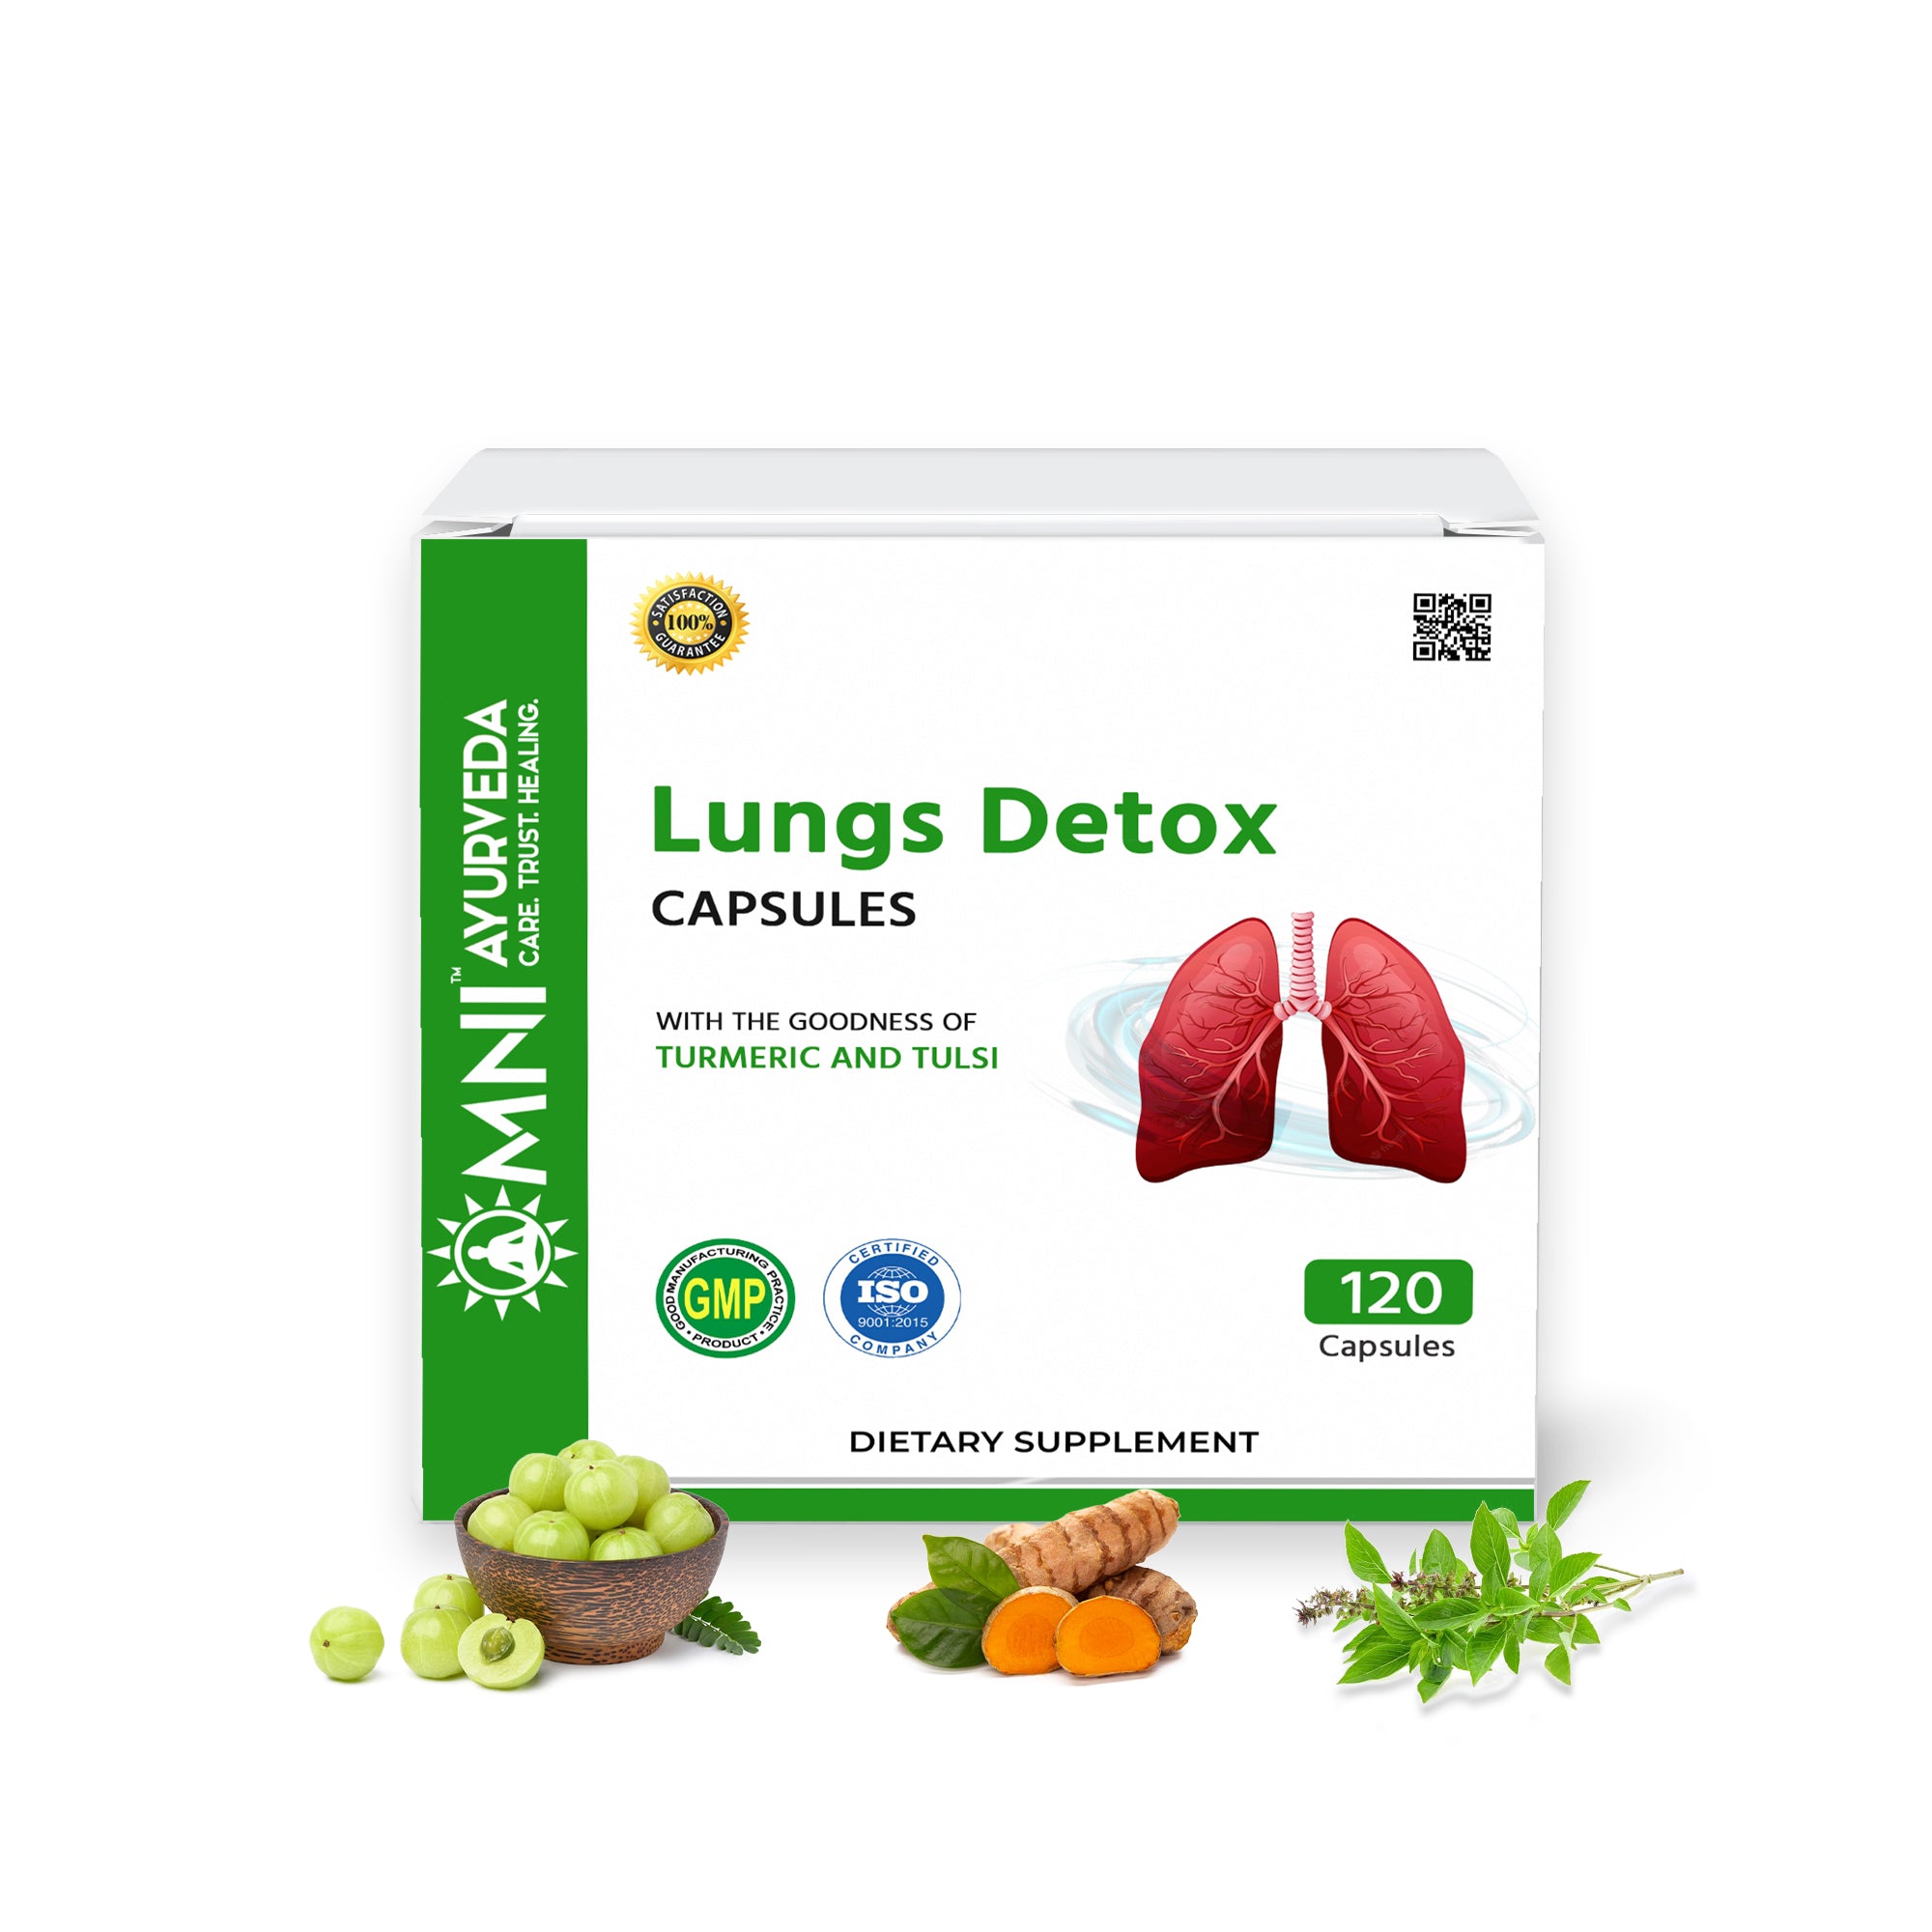 Lungs Detox Capsules